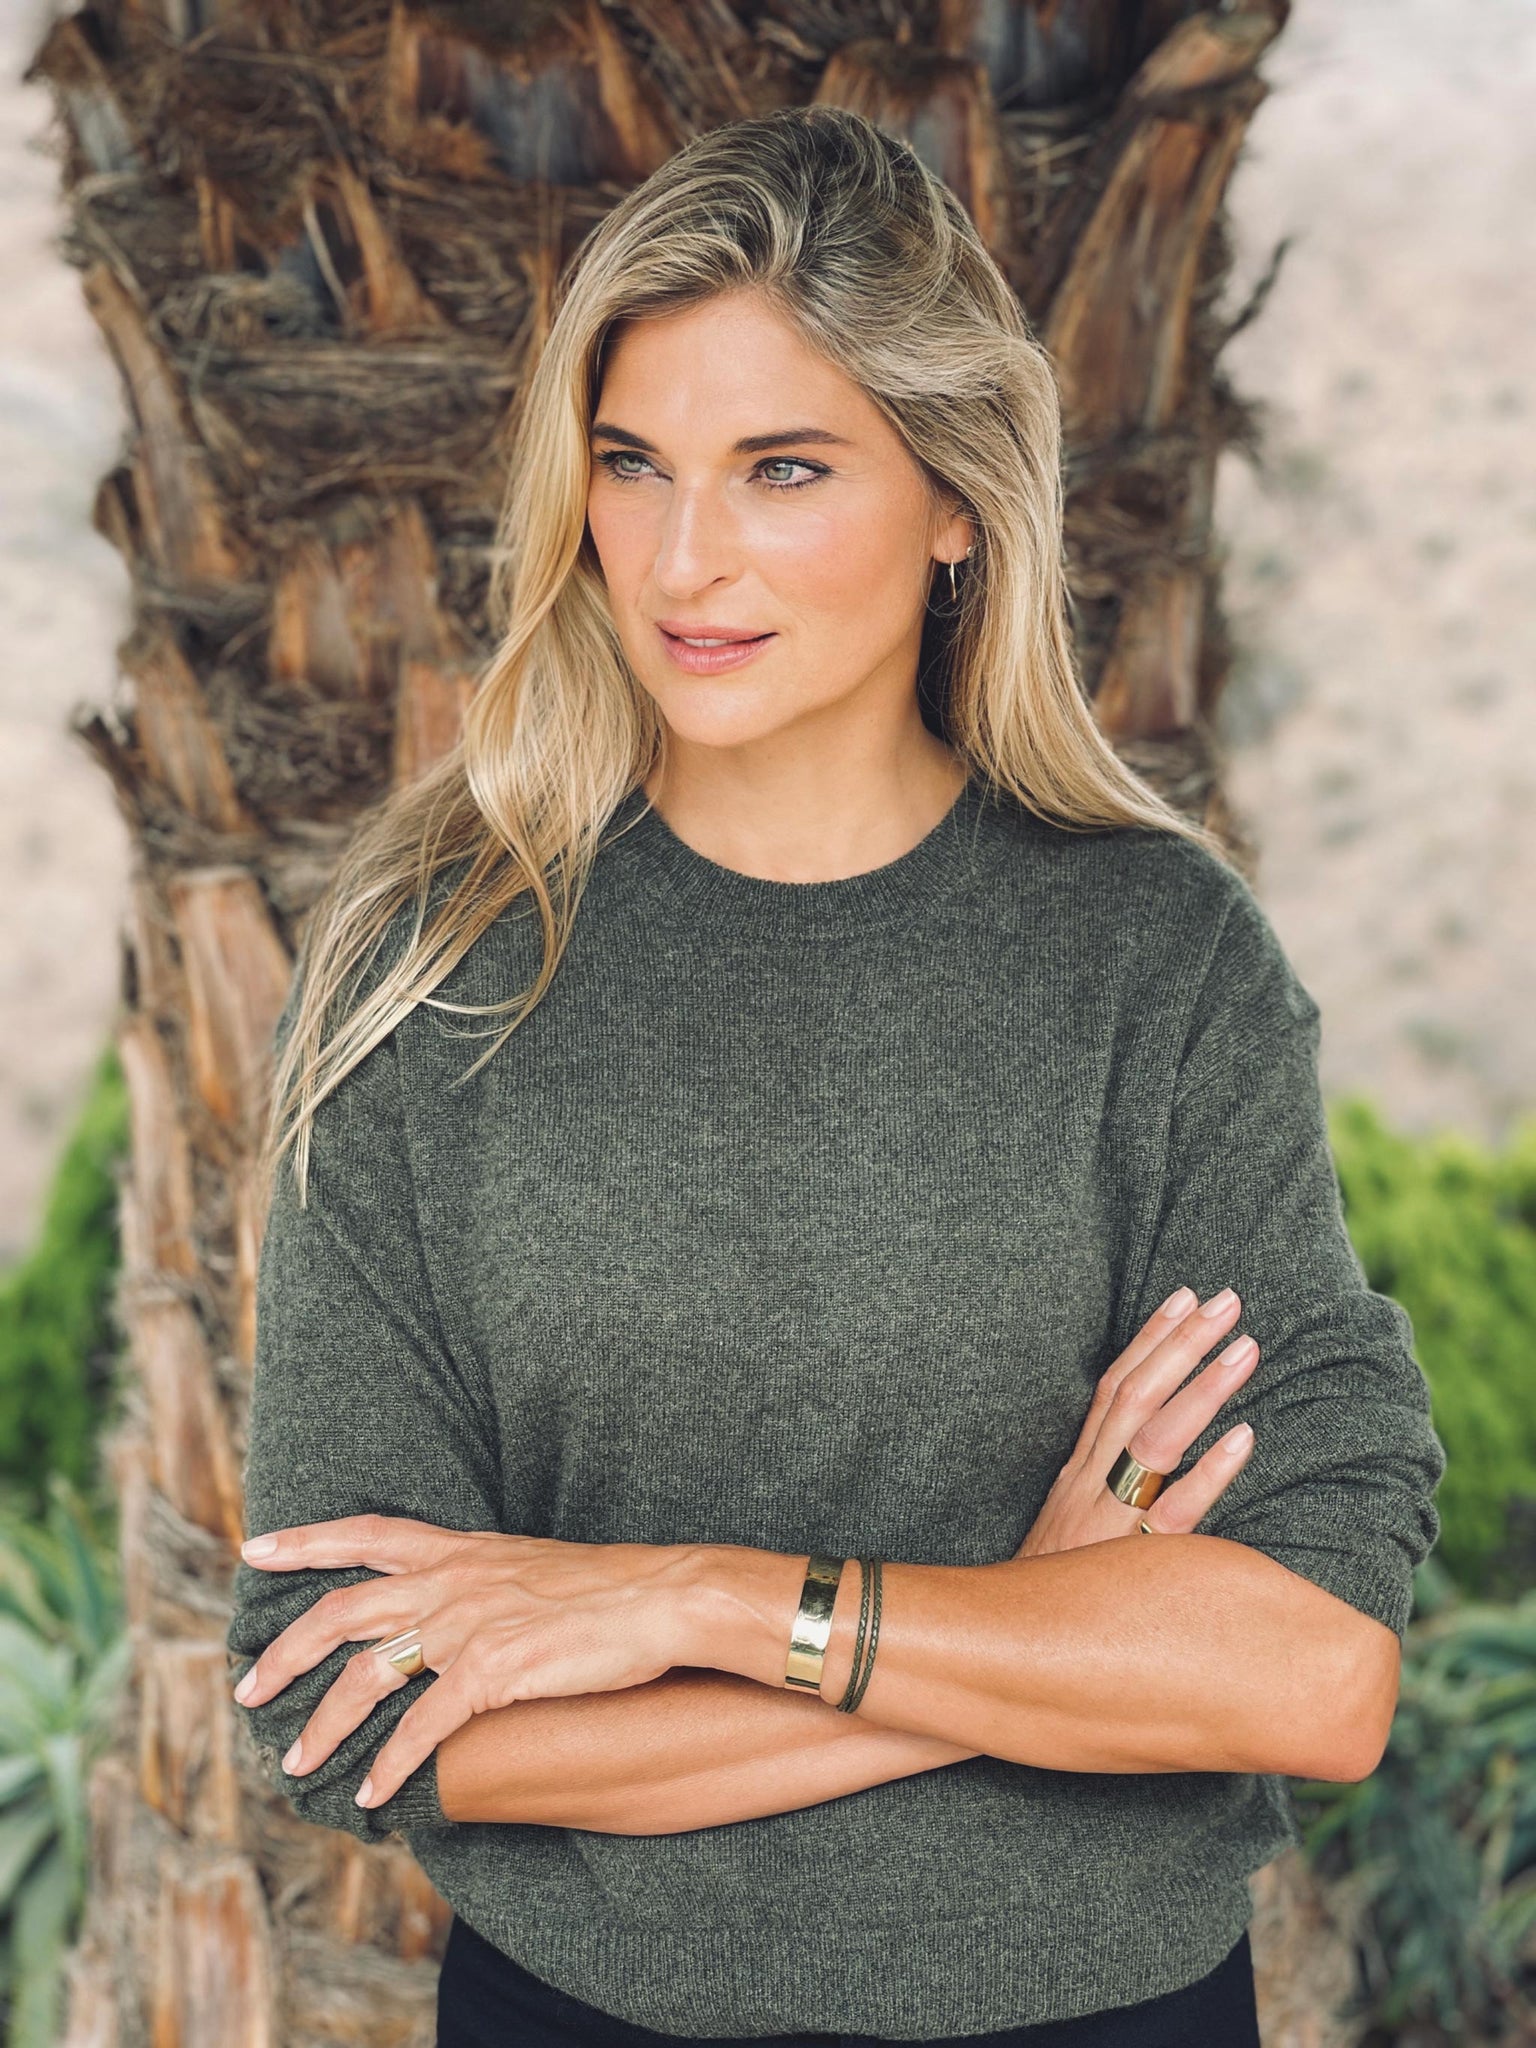 Gabrielle Reece | Entrepreneur – Kendall Conrad